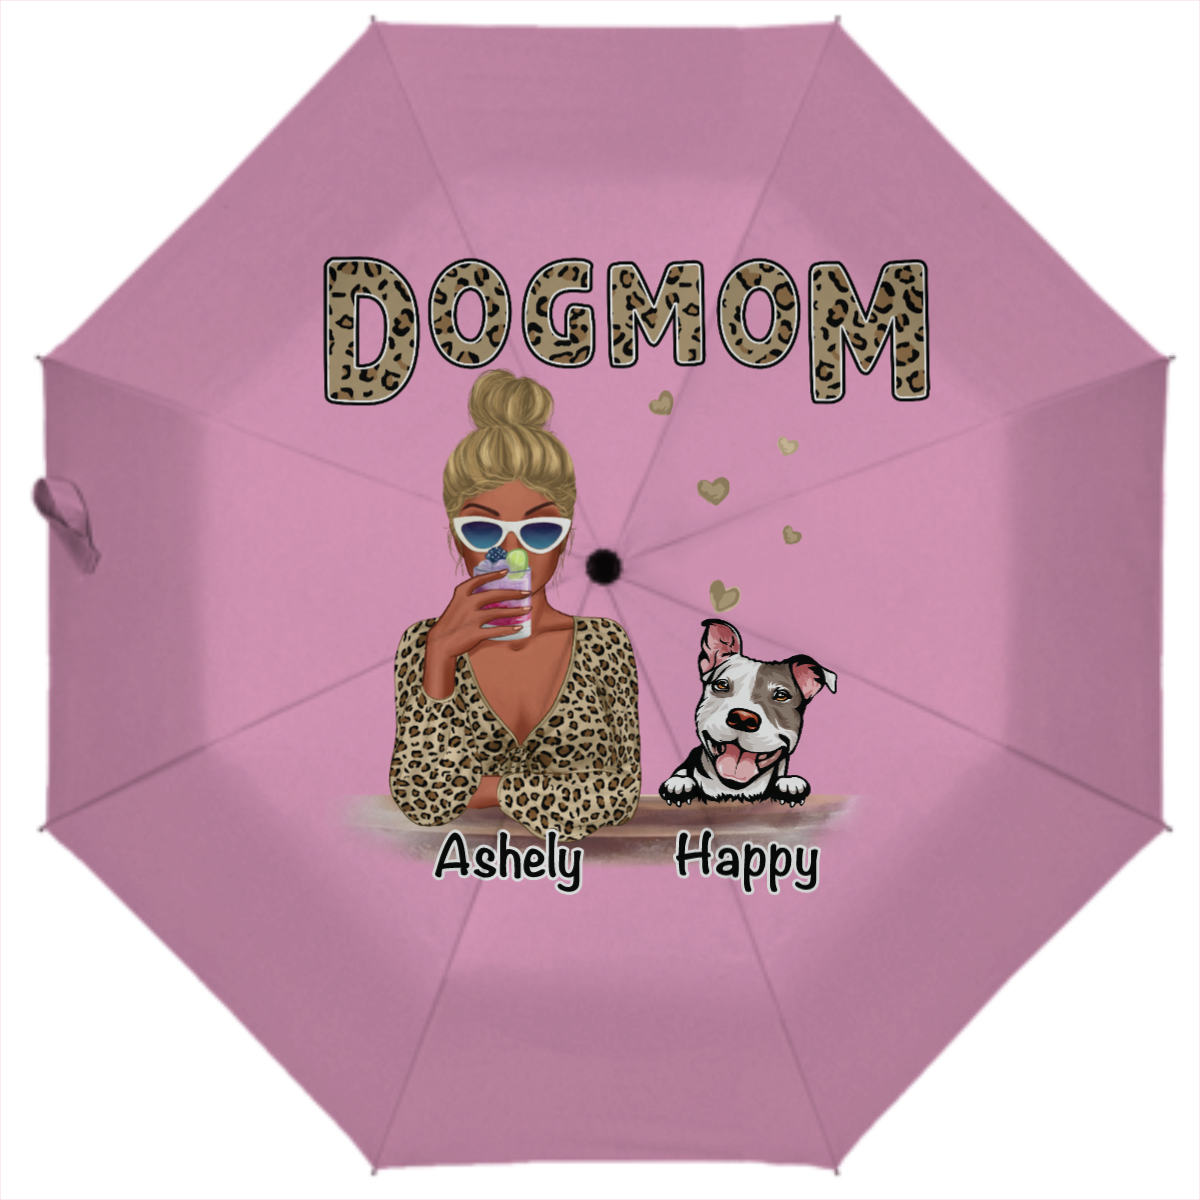 レオパード シャツ 犬 ママ パーソナライズ 自動折りたたみ傘